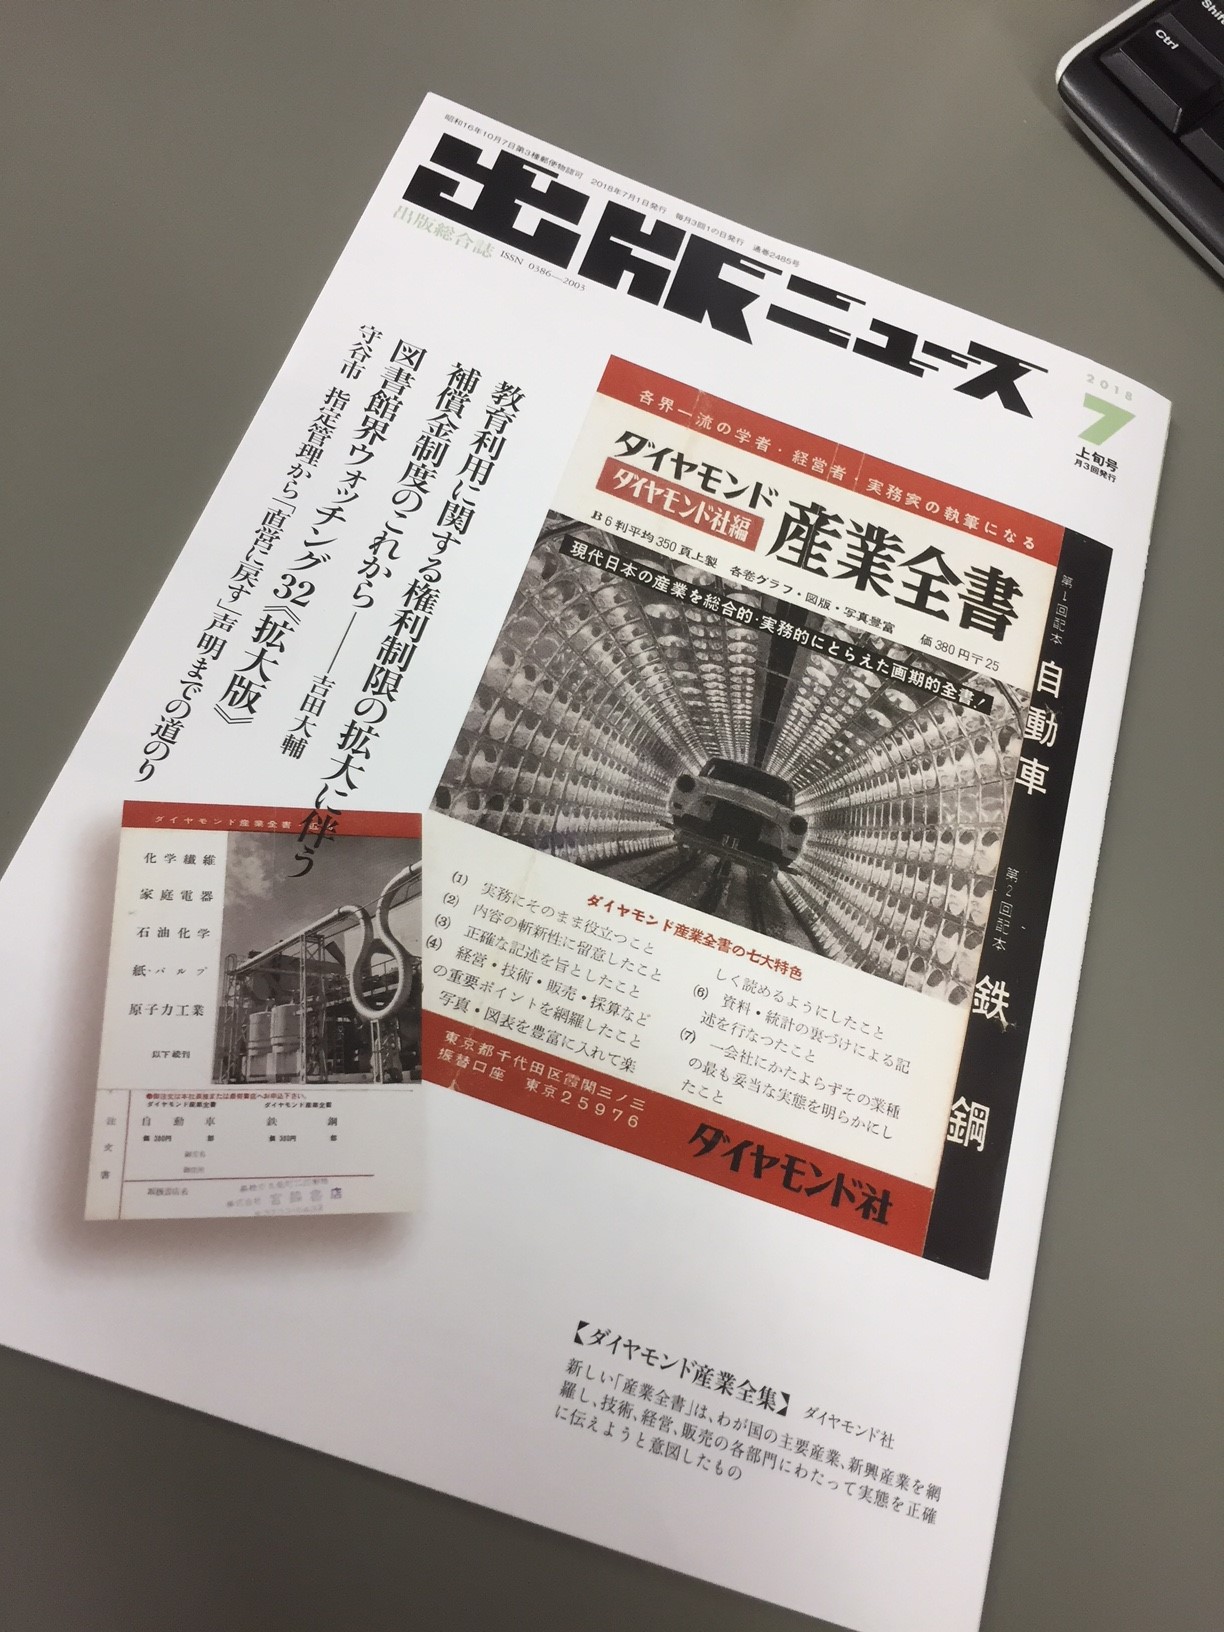 日本書紀の誕生―編纂と受容の歴史―』が雑誌『出版ニュース』で紹介